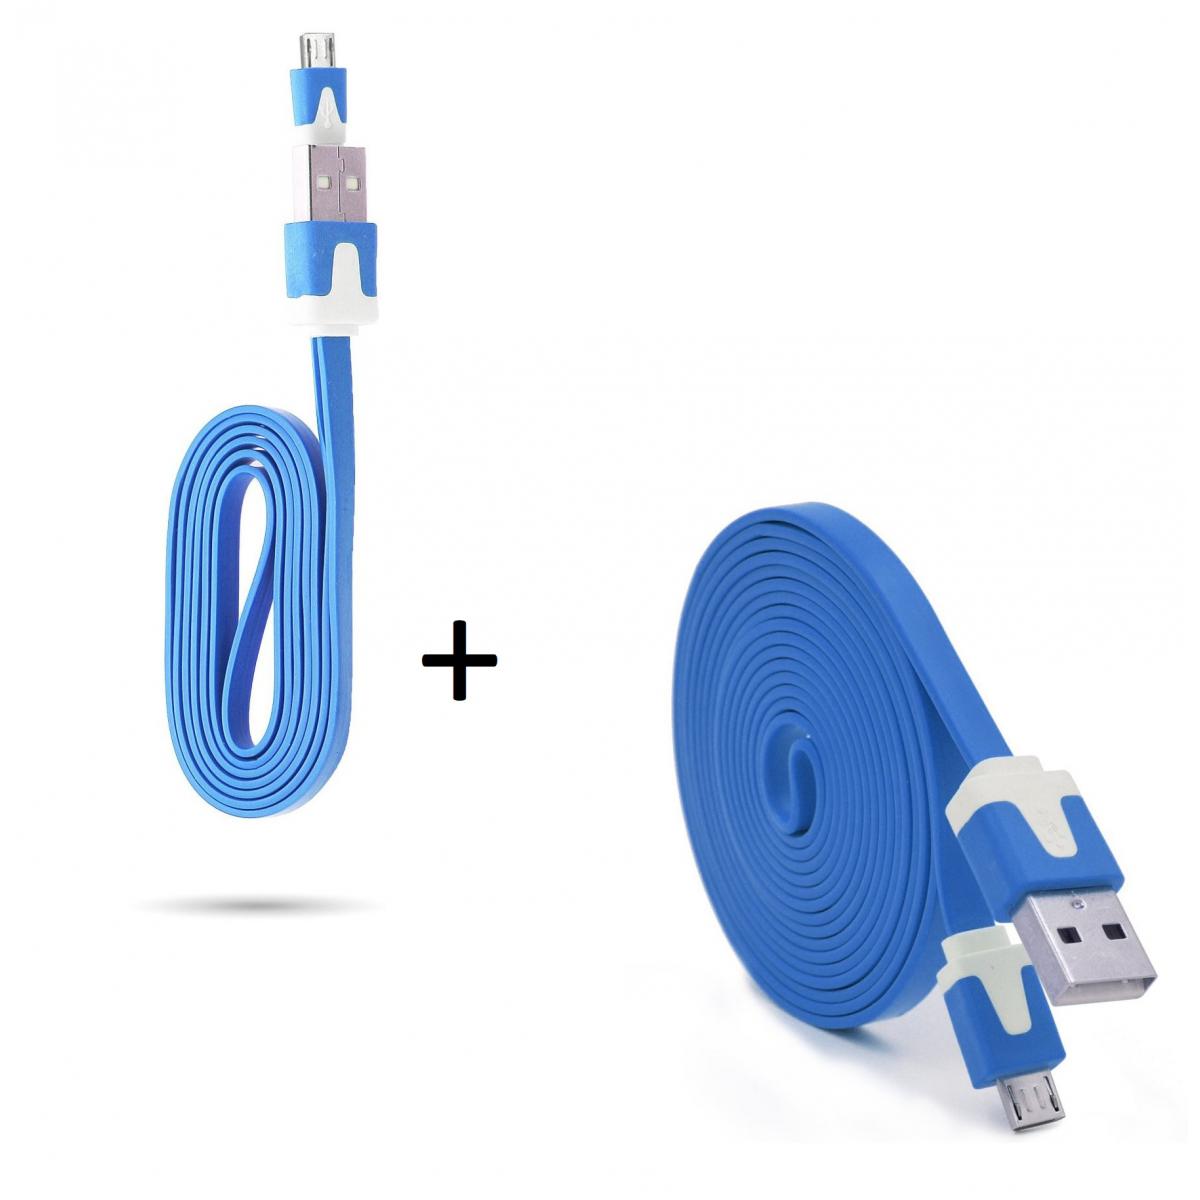 Shot - Pack Chargeur pour ALCATEL 1 2019 Smartphone Micro USB (Cable Noodle 3m + Cable Noodle 1m) Android (BLEU) - Chargeur secteur téléphone